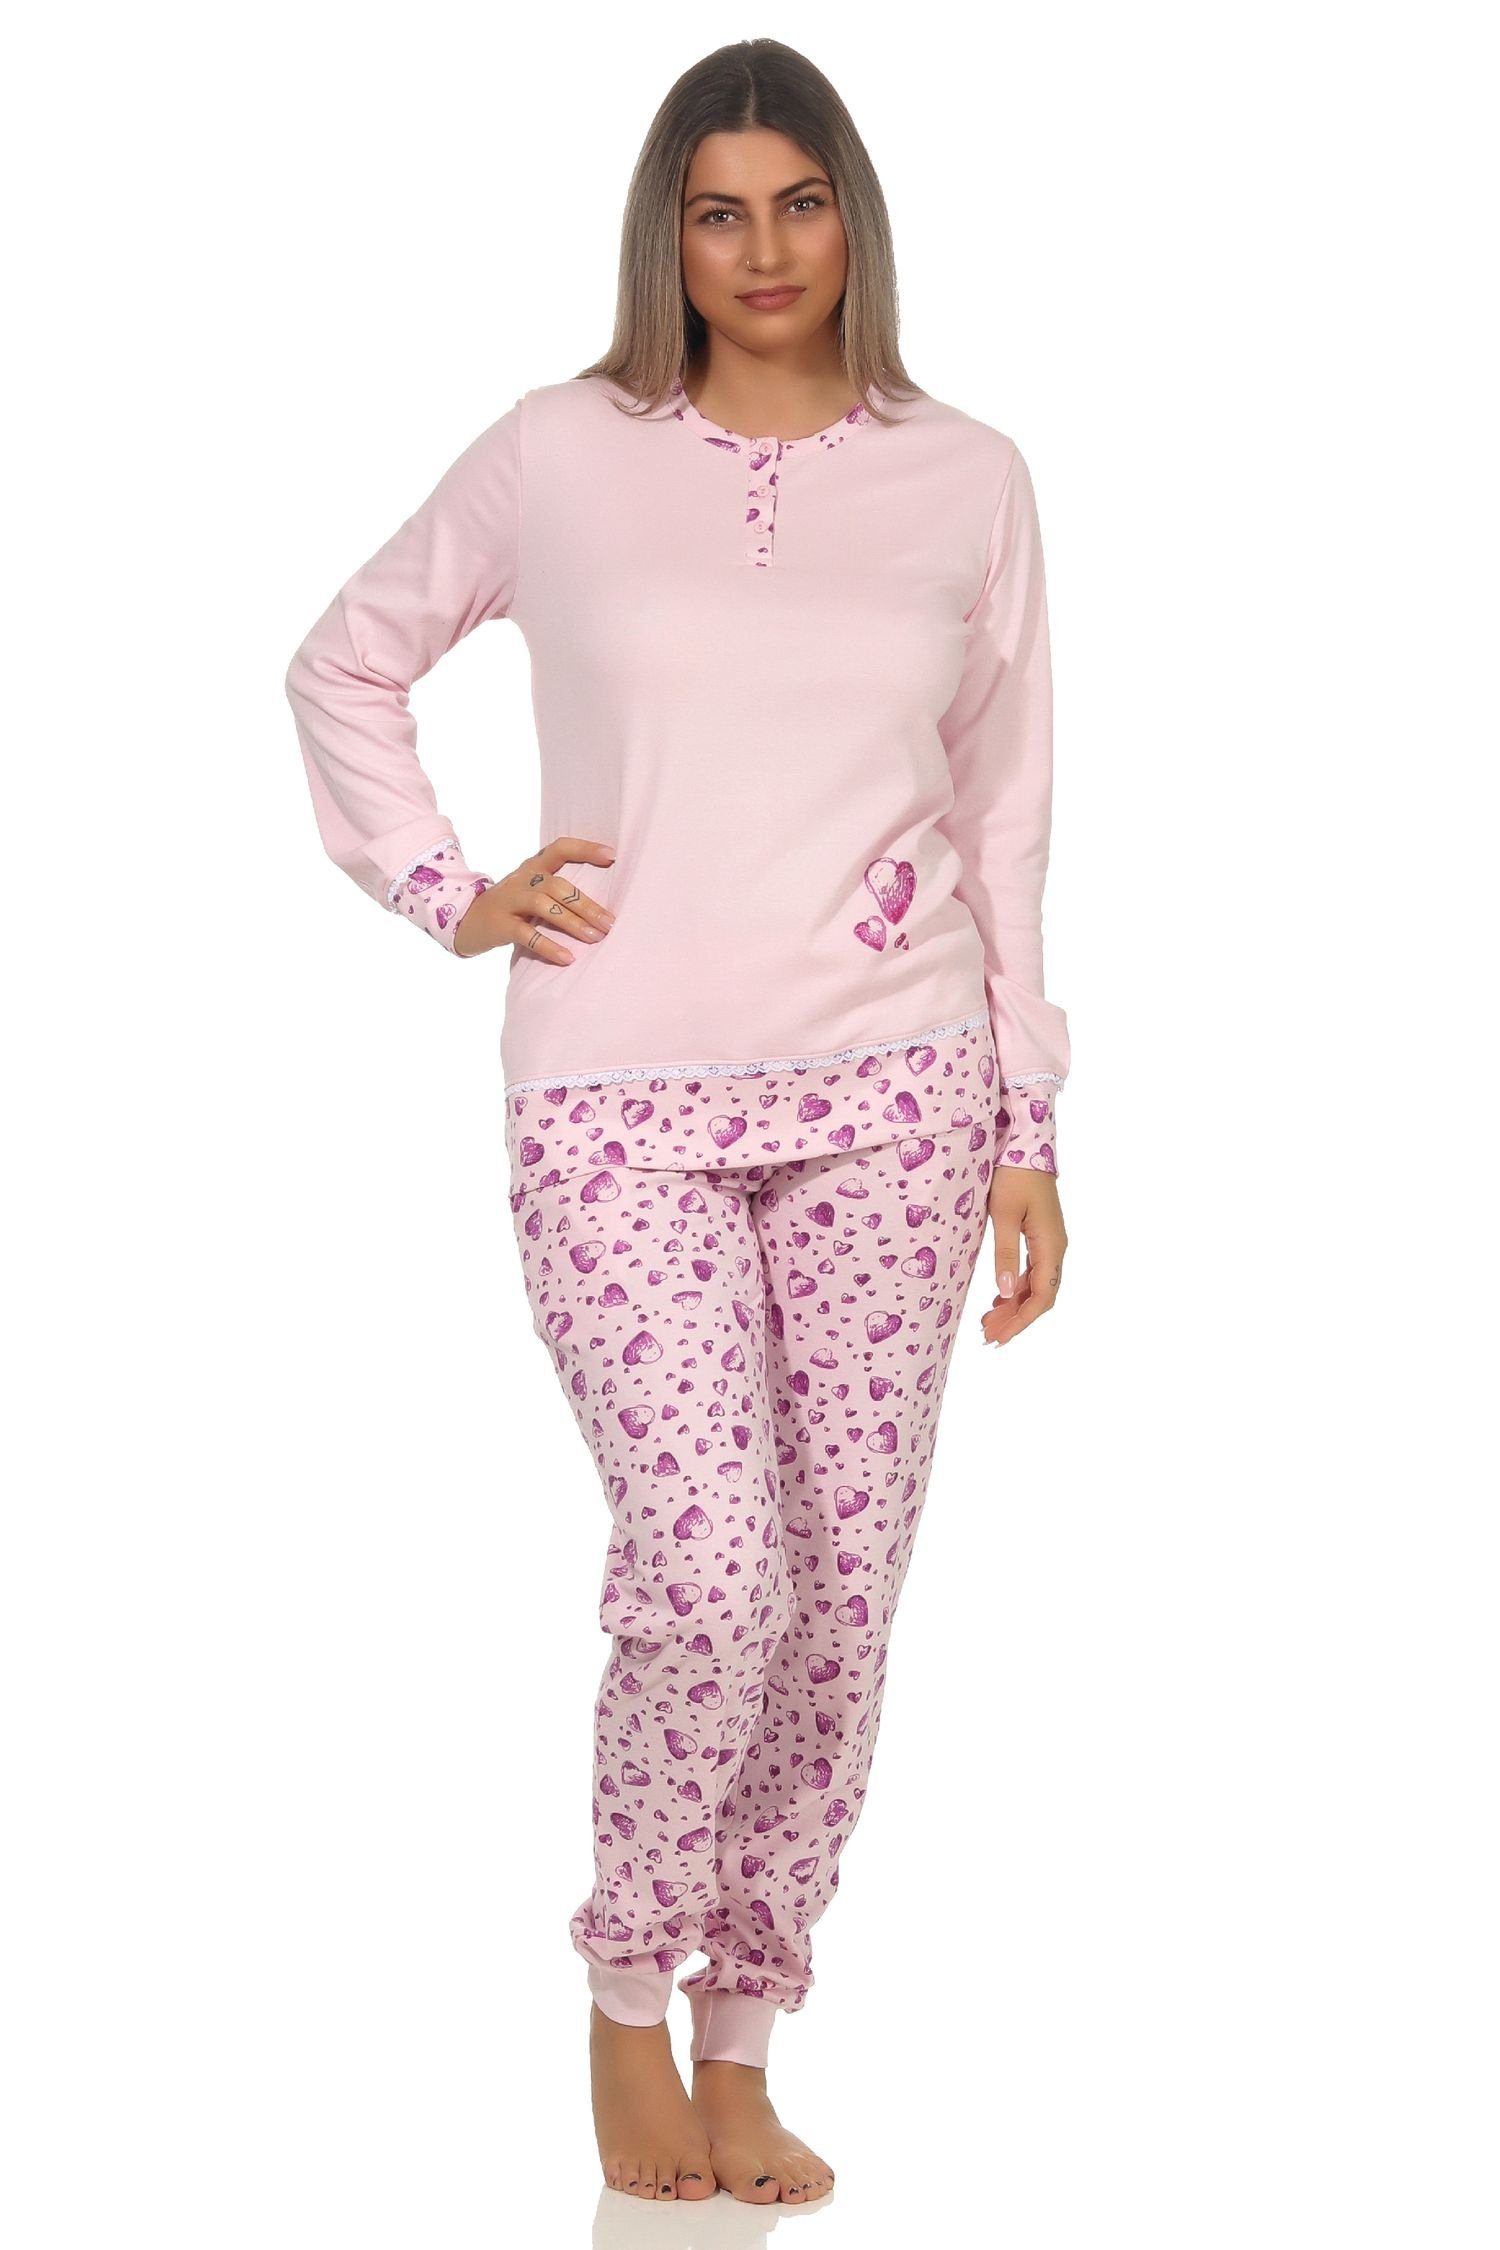 Bündchen Motiven mit Pyjama Kuschel Damen in Normann Herz Interlock Pyjama und rosa